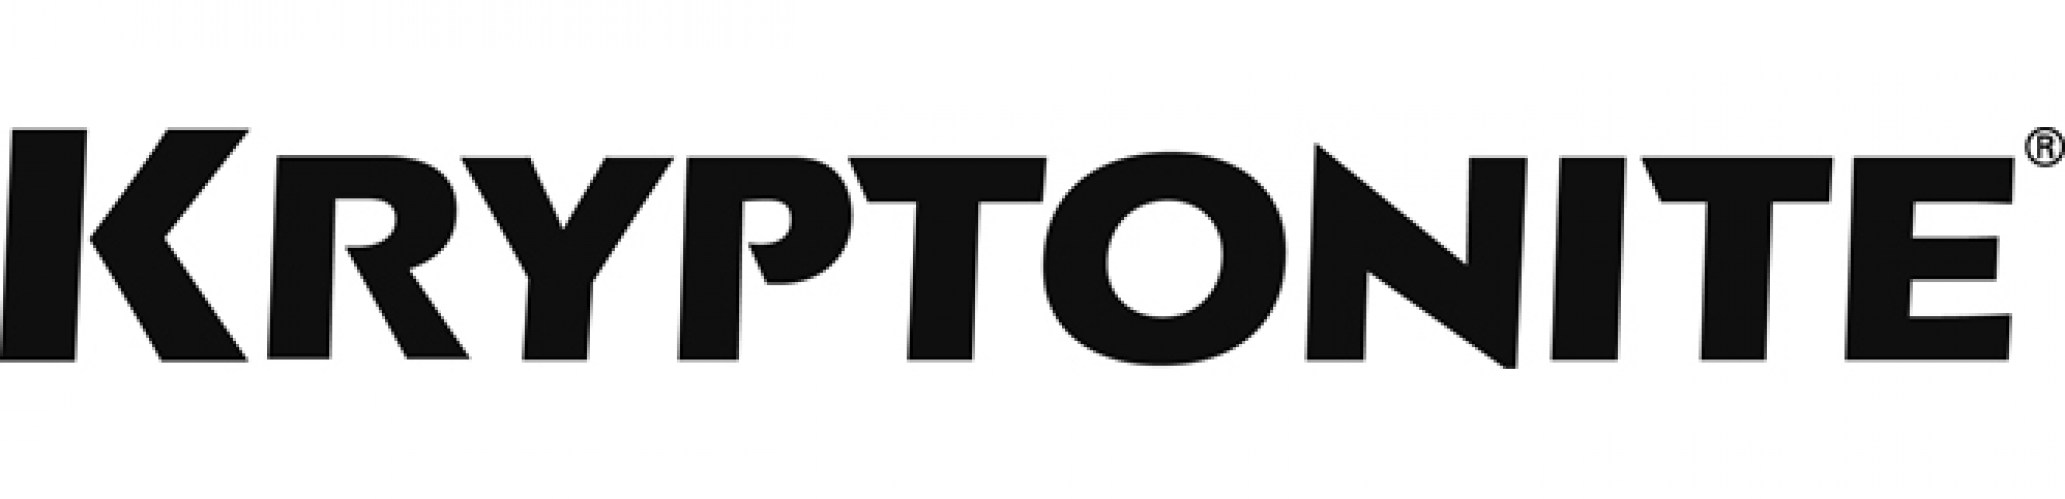 Kryptonite-logo